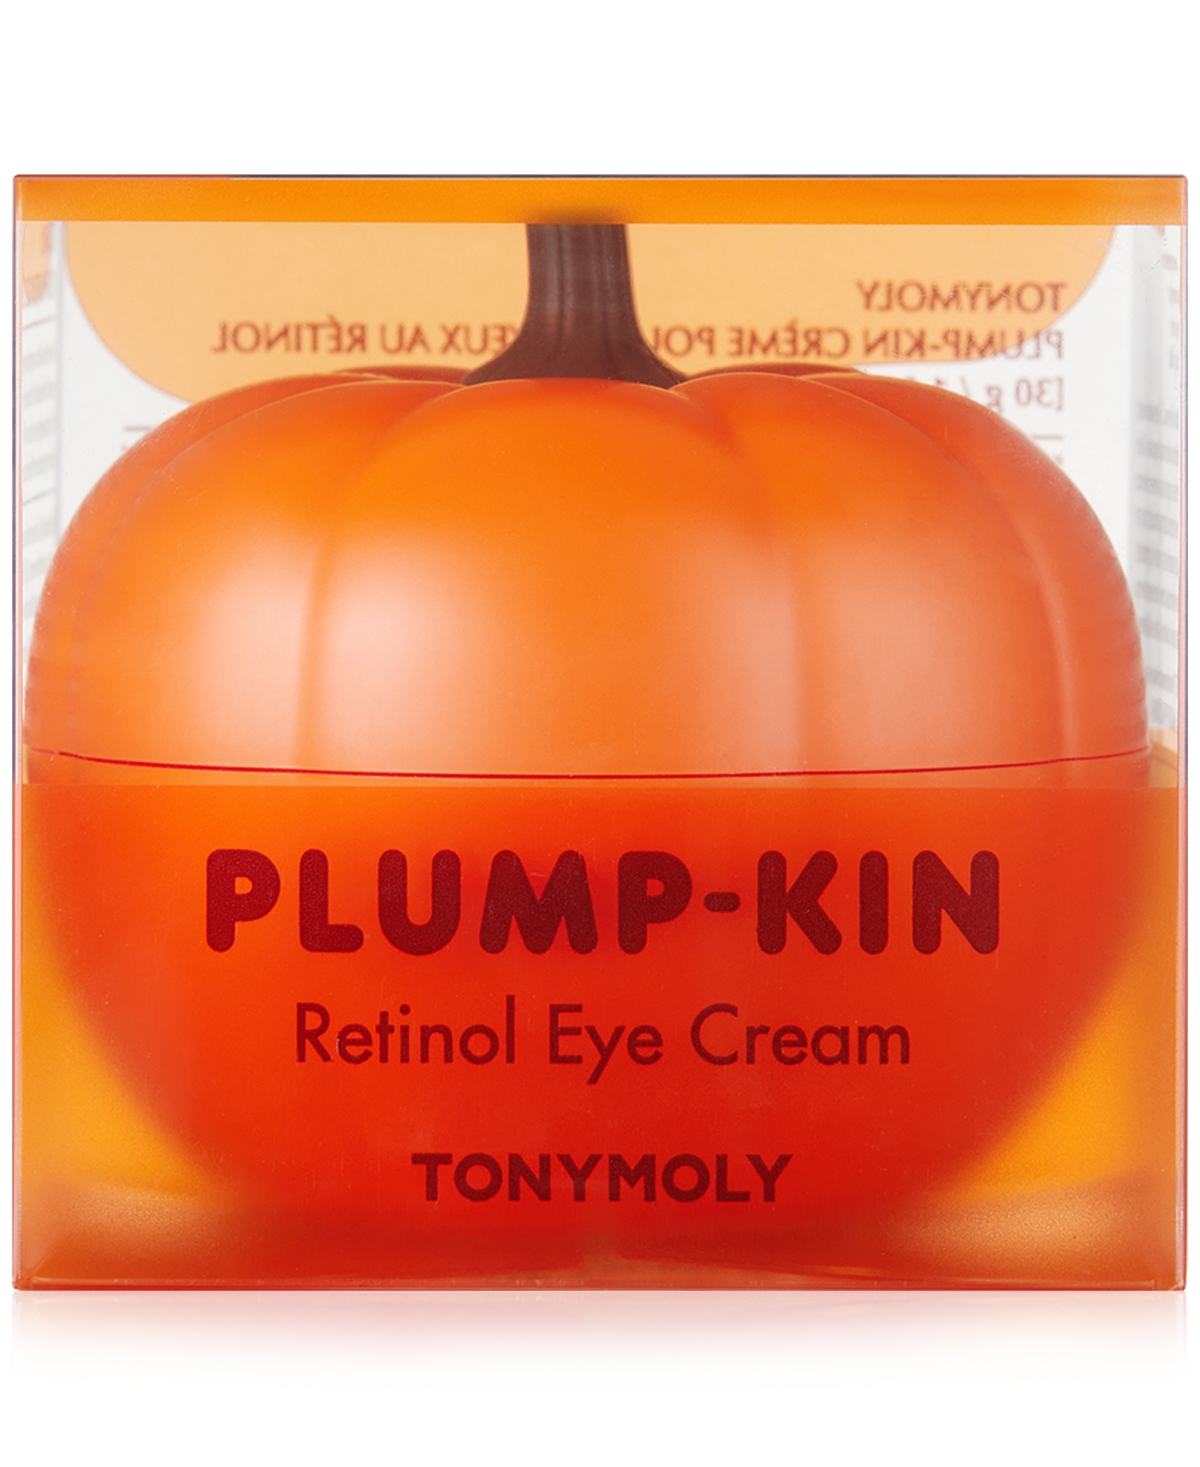 Plump-kin Retinol Eye Cream